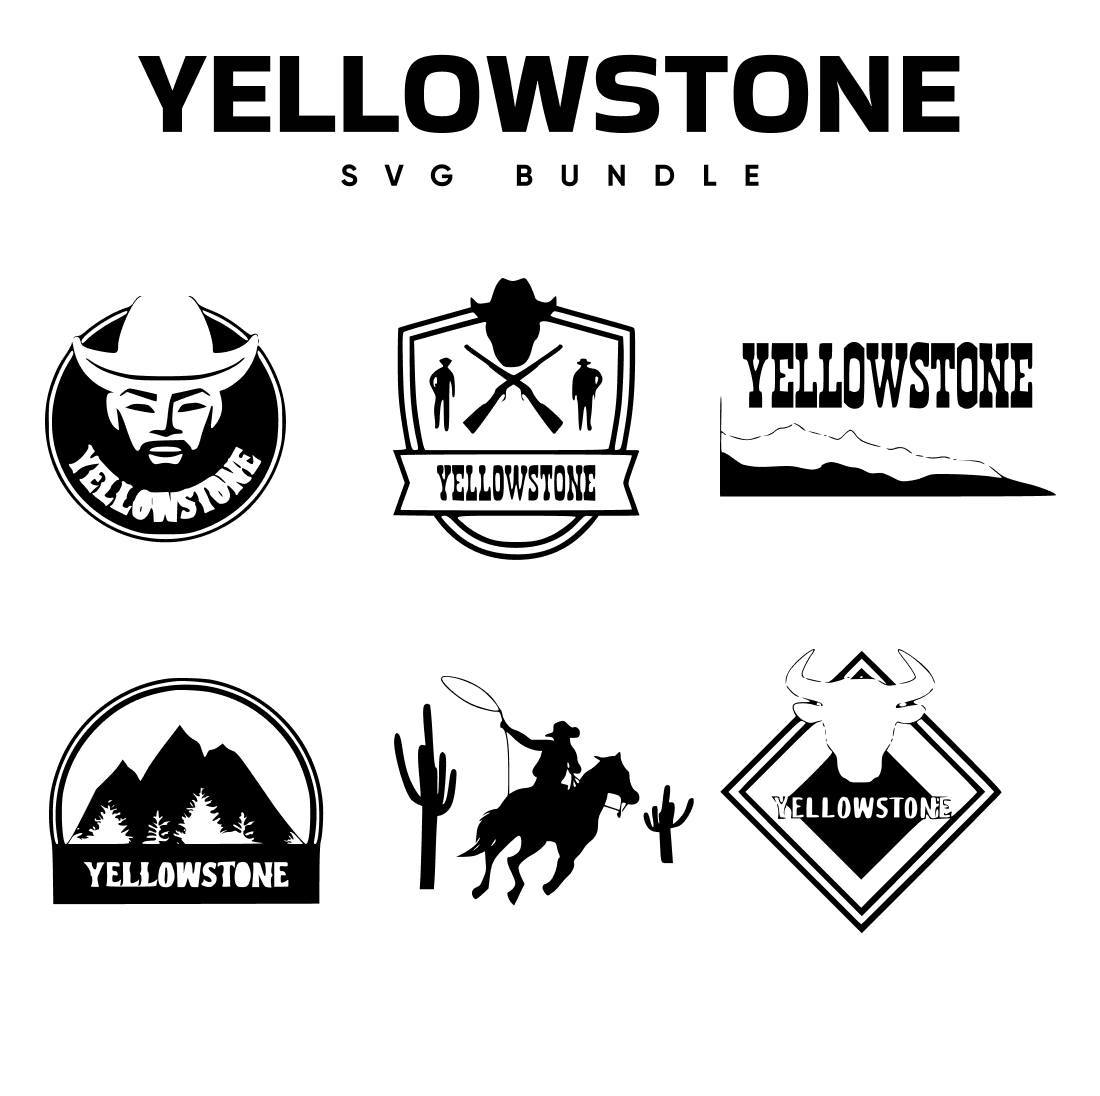 Yellowstone SVG Free.